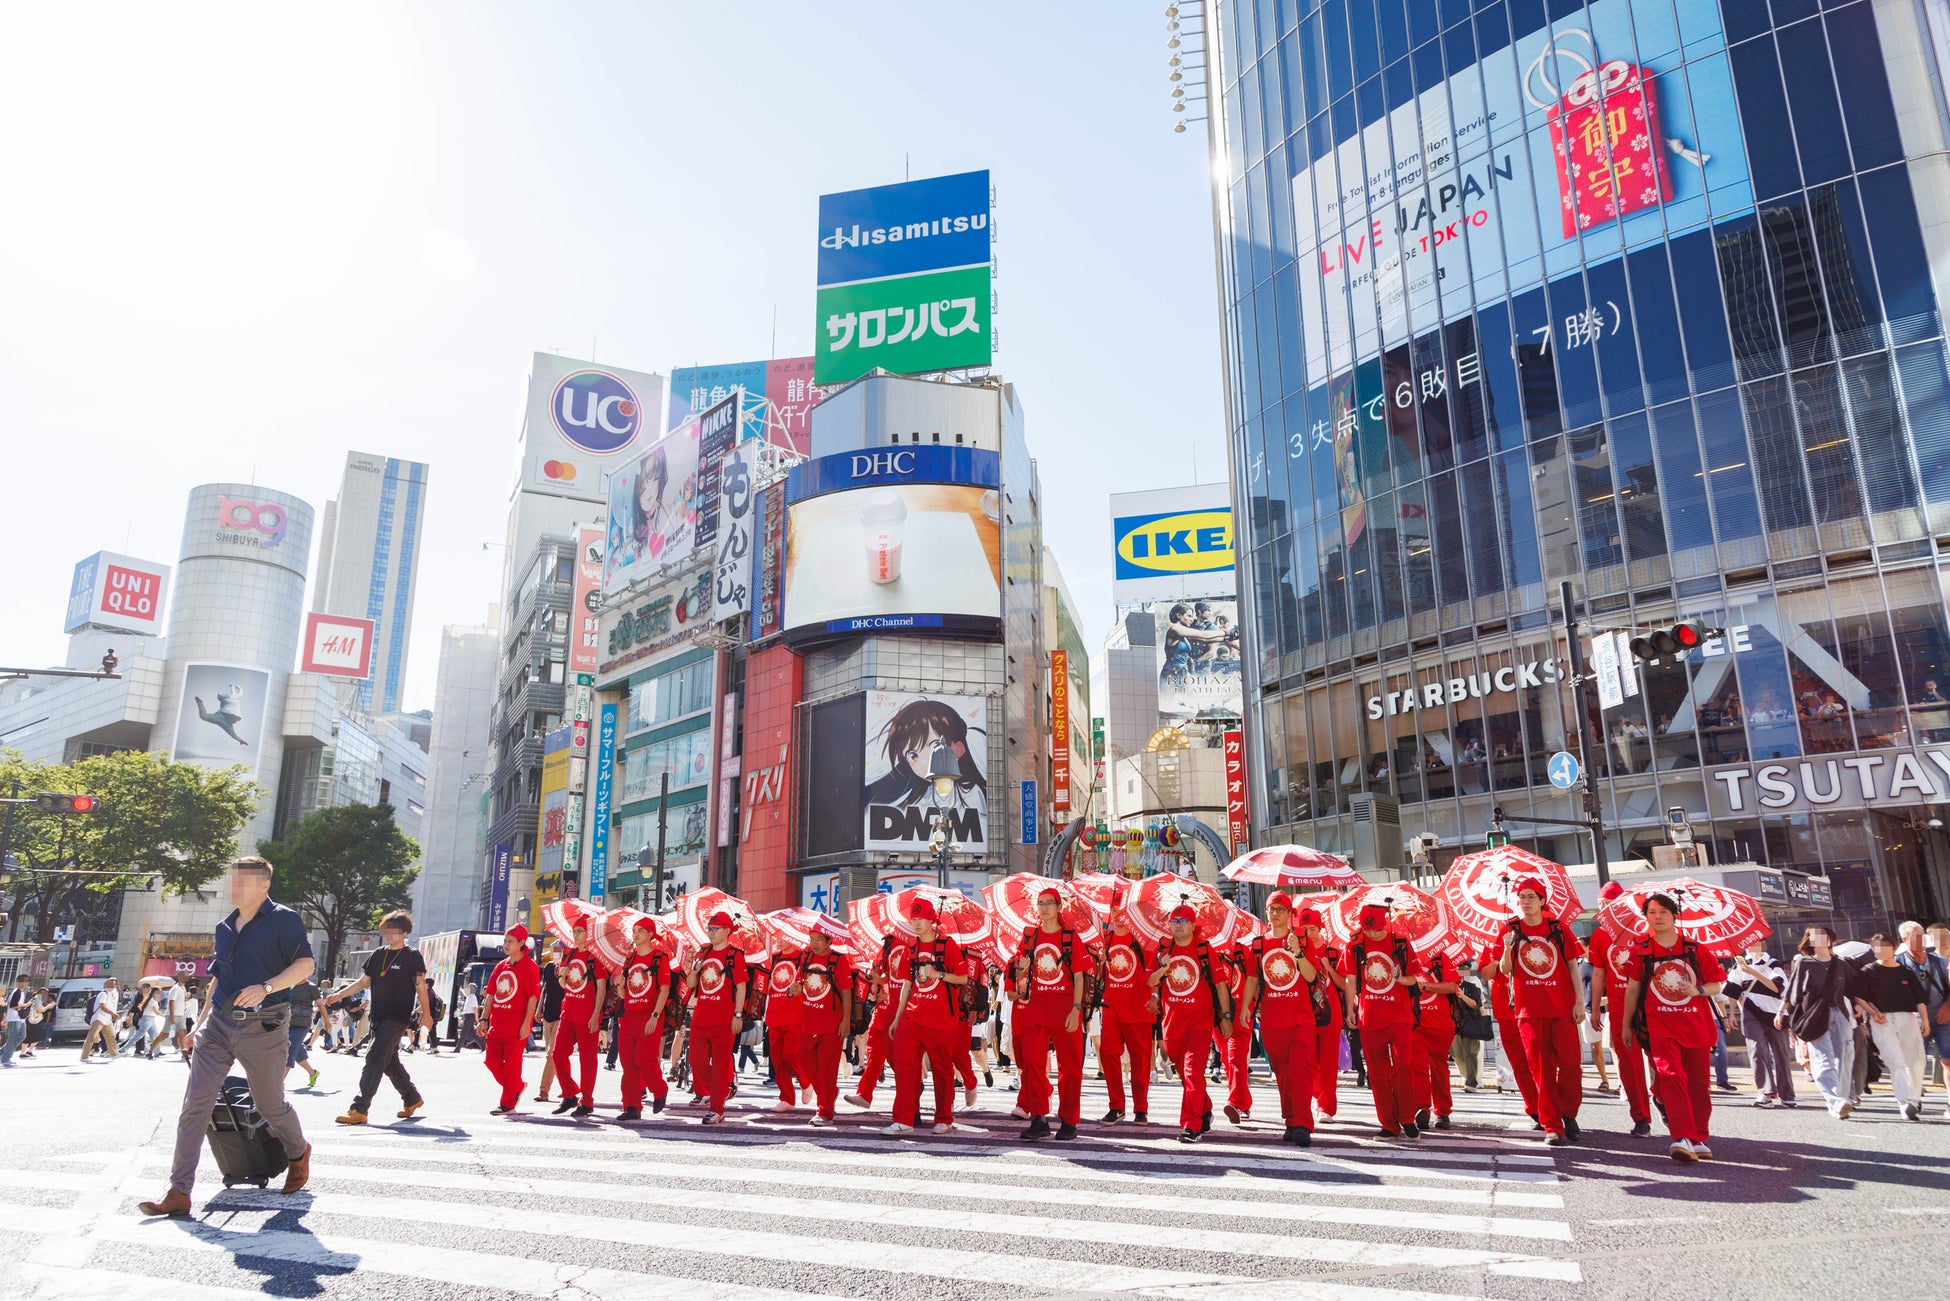 真夏の渋谷を“辛うまラーメン”が練り歩く！“蒙古タンメン中本傘”を差した中本軍団が、ゲリラプロモーションを敢行！